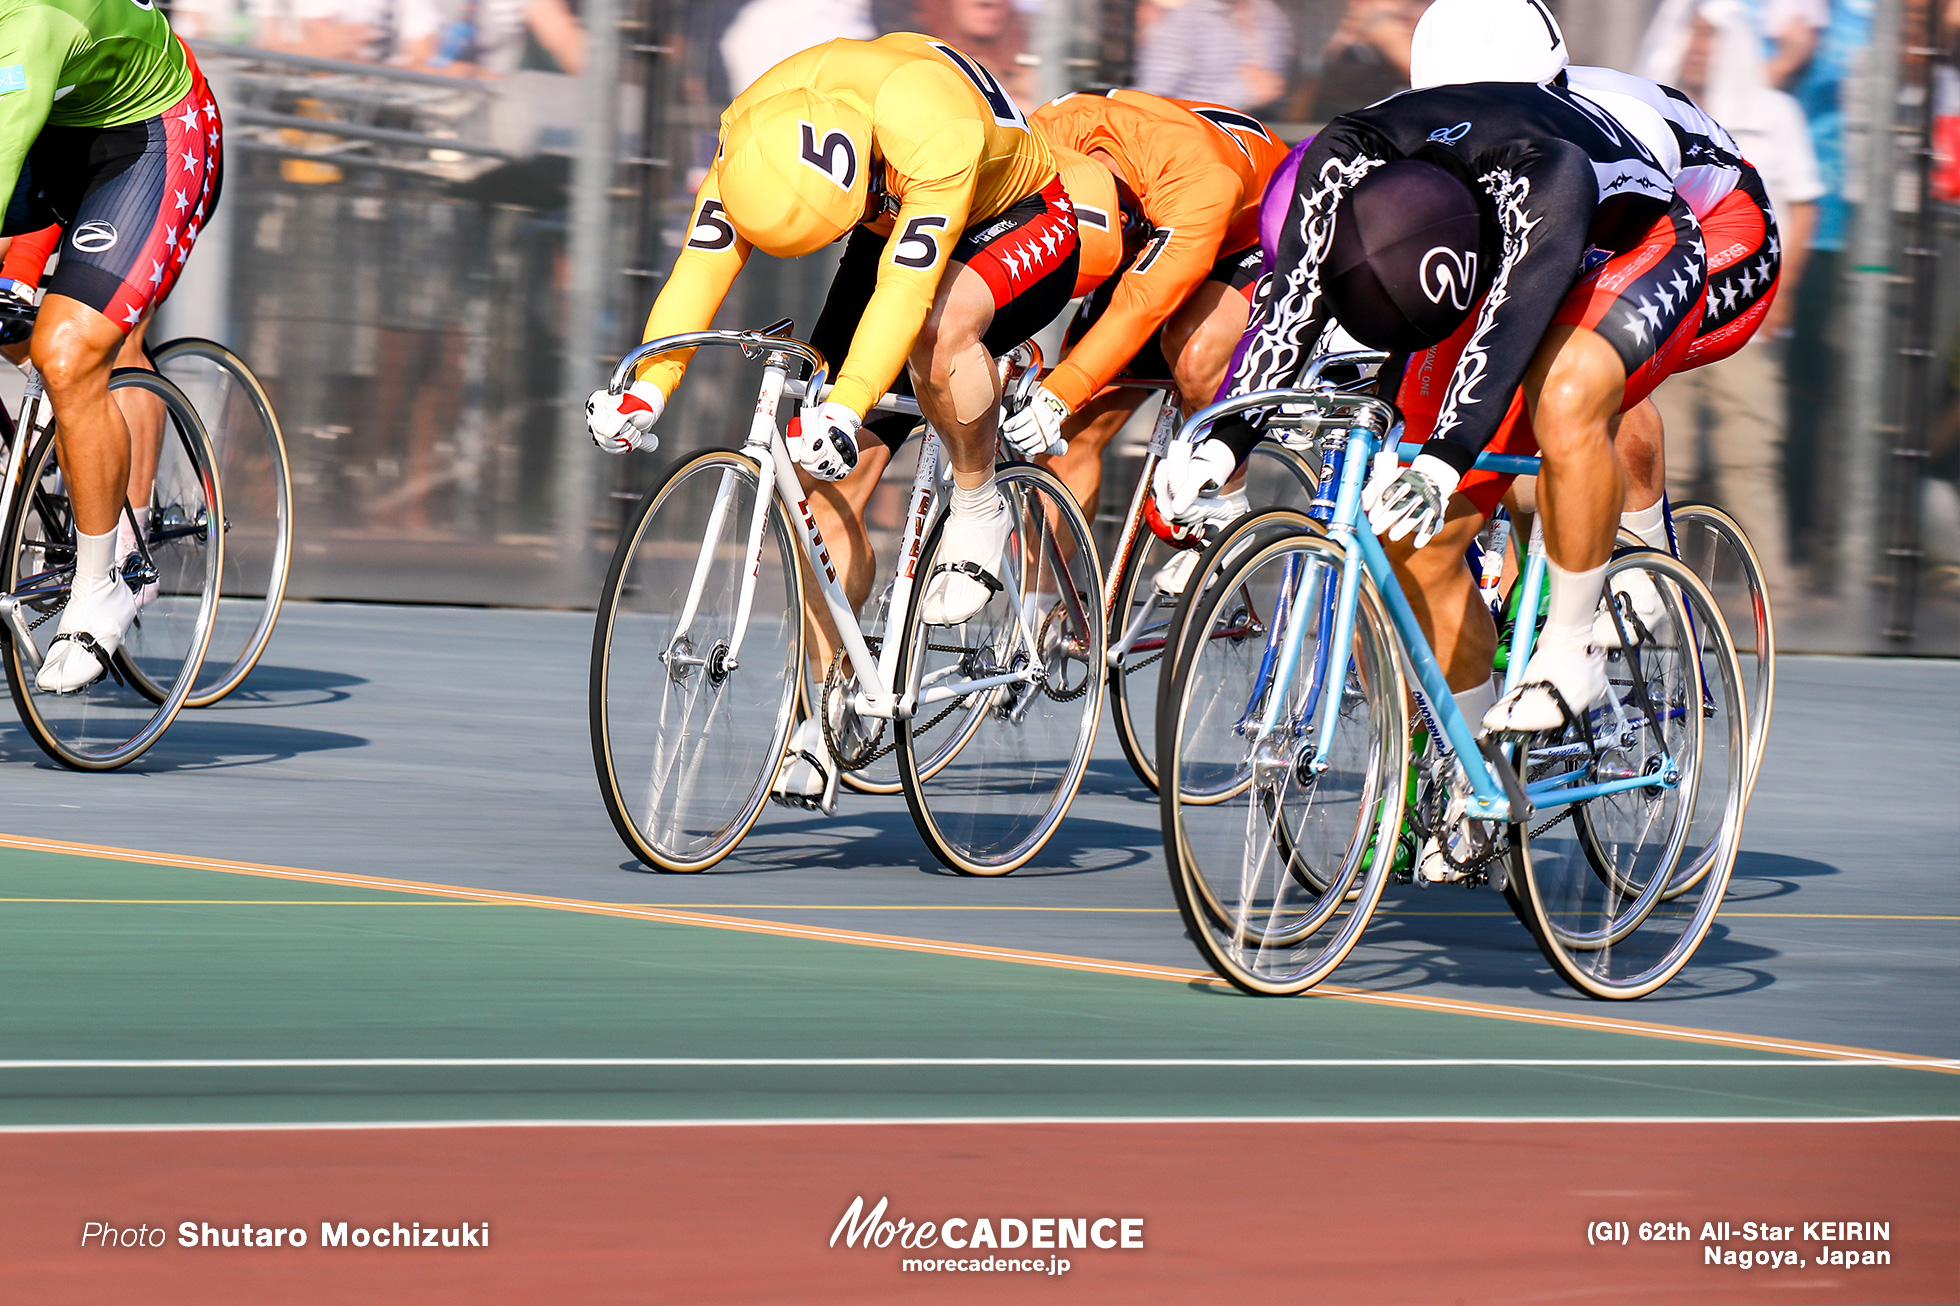 【2020年8月】ナショナルチーム出走予定表 - More CADENCE - 自転車トラック競技/ロードレース/競輪ニュース